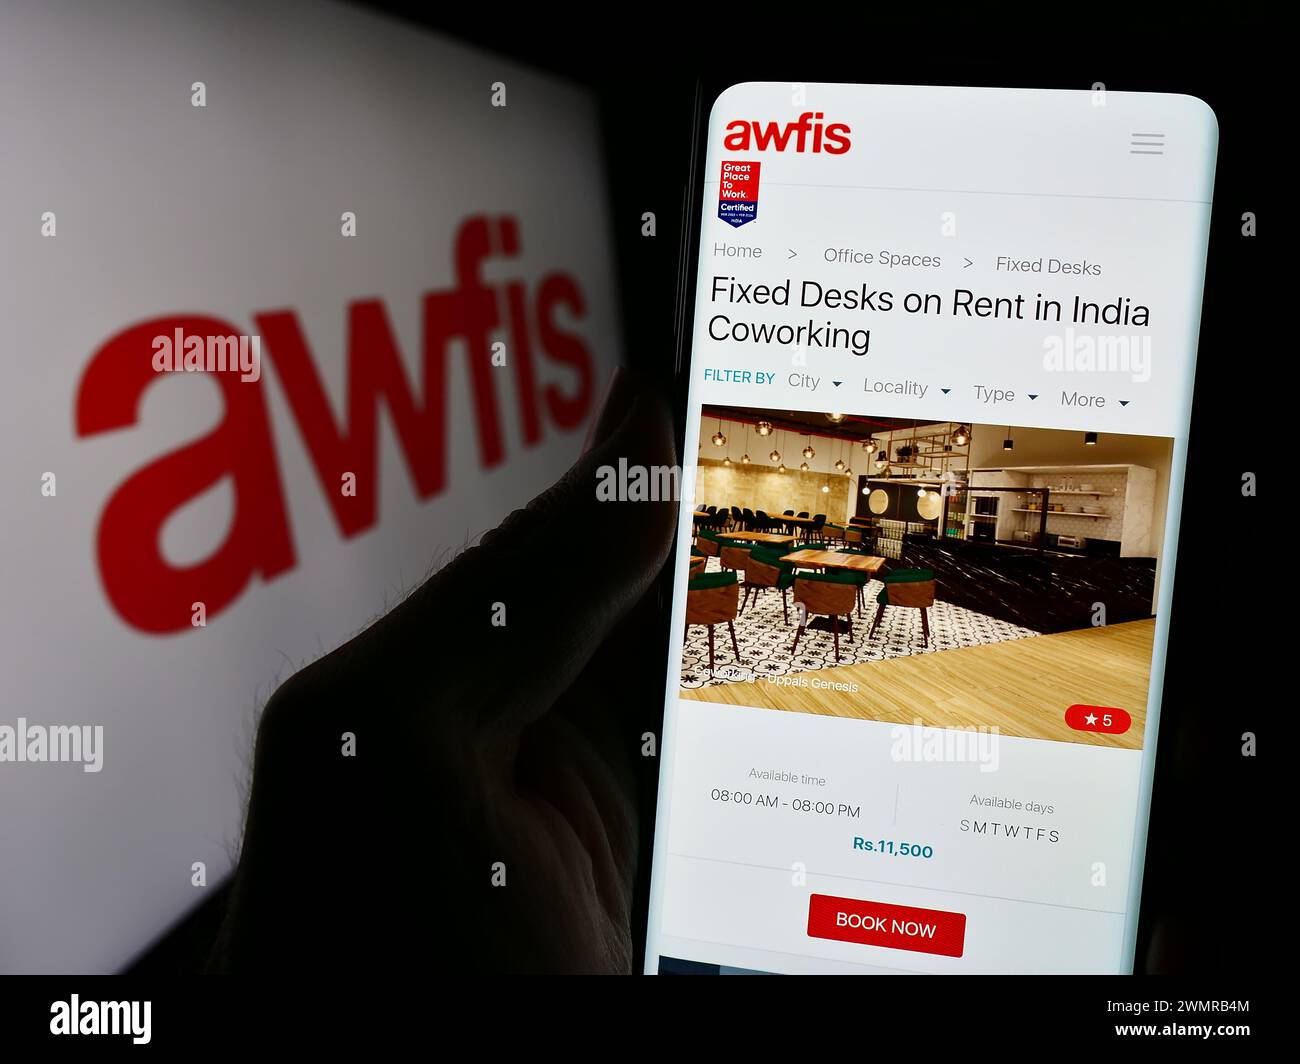 Personne tenant le téléphone portable avec la page Web de la société indienne d'espace de travail Awfis Space solutions Limited avec le logo. Concentrez-vous sur le centre de l'écran du téléphone. Banque D'Images